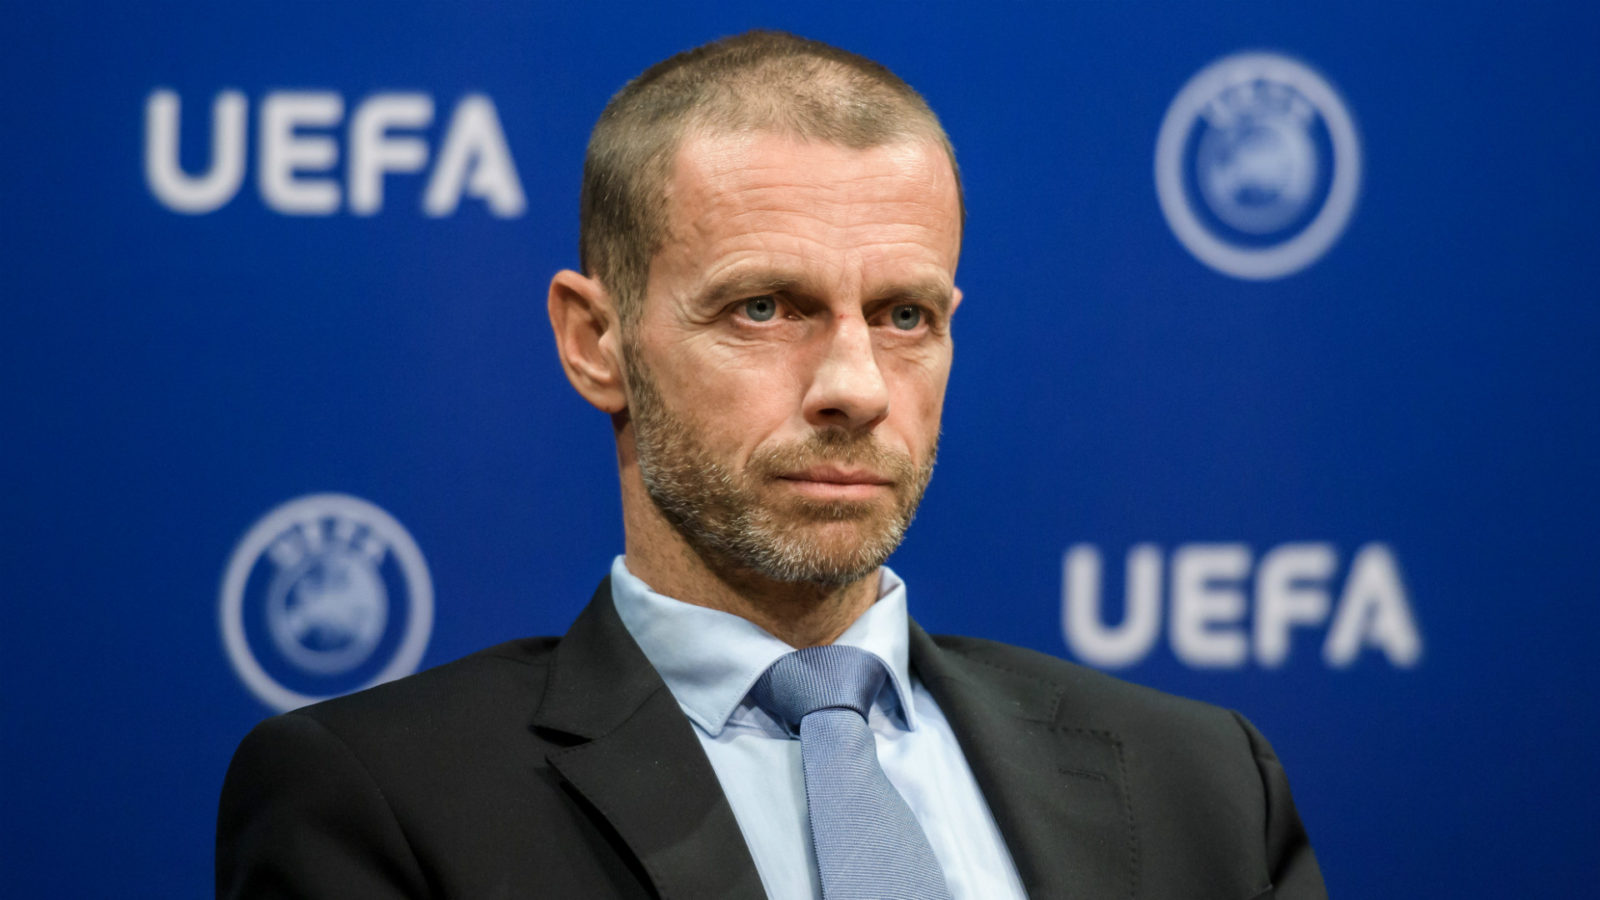 Ceferin seul candidat à la présidence de l&rsquo;UEFA : l&rsquo;actuel président s&rsquo;envole vers un troisième mandat